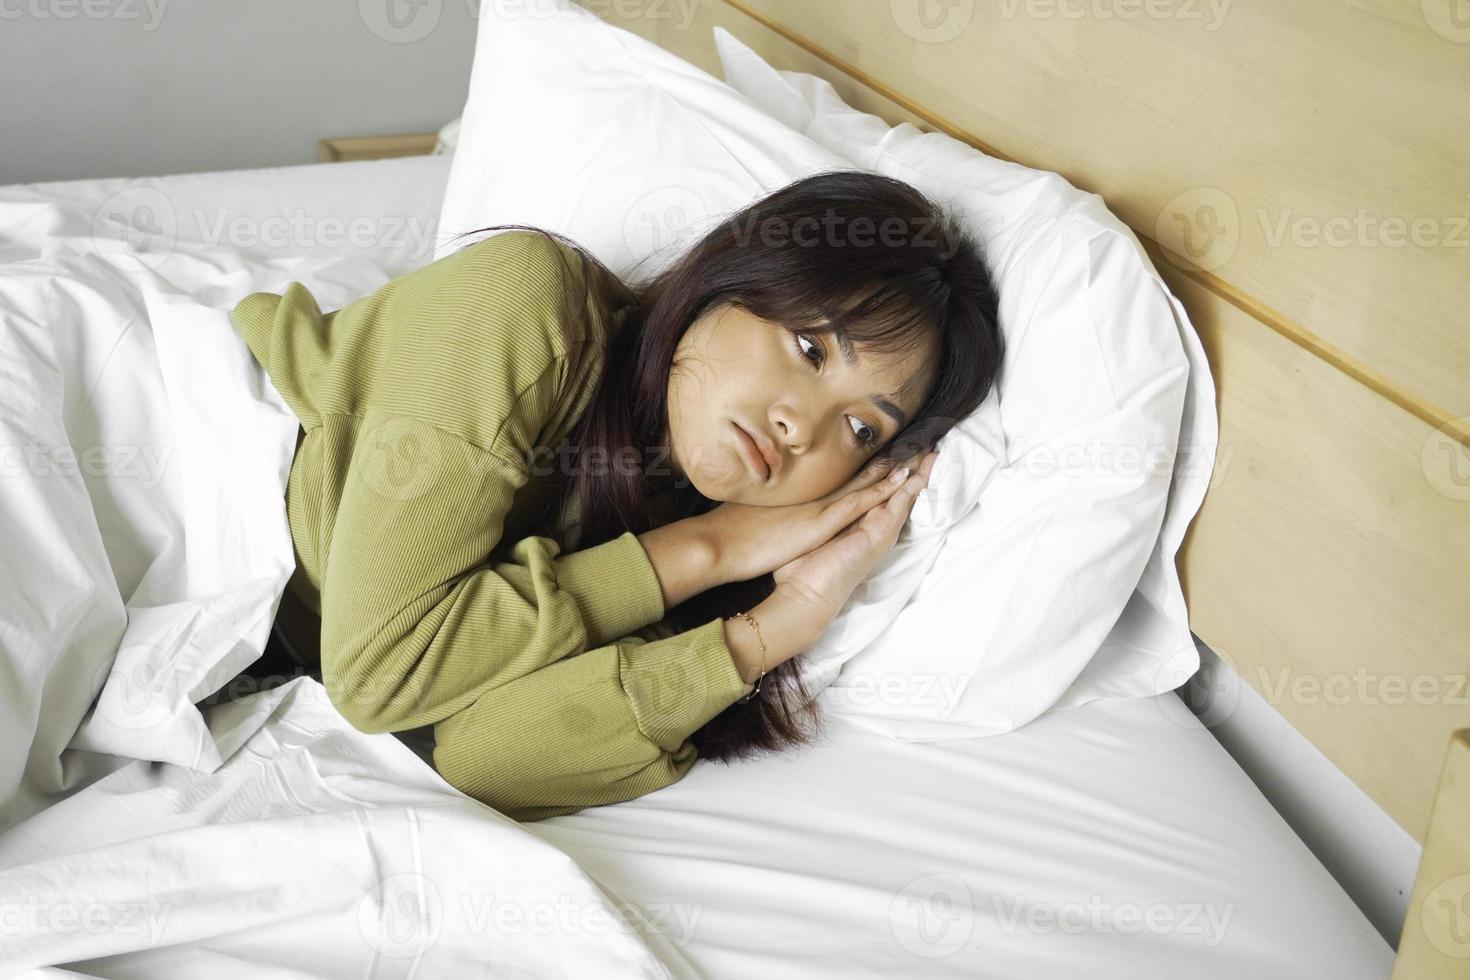 attent Aziatisch vrouw looks peinzend bovenstaand gekleed in sweater poses denkt over toekomst terwijl aan het liegen Aan de bed foto